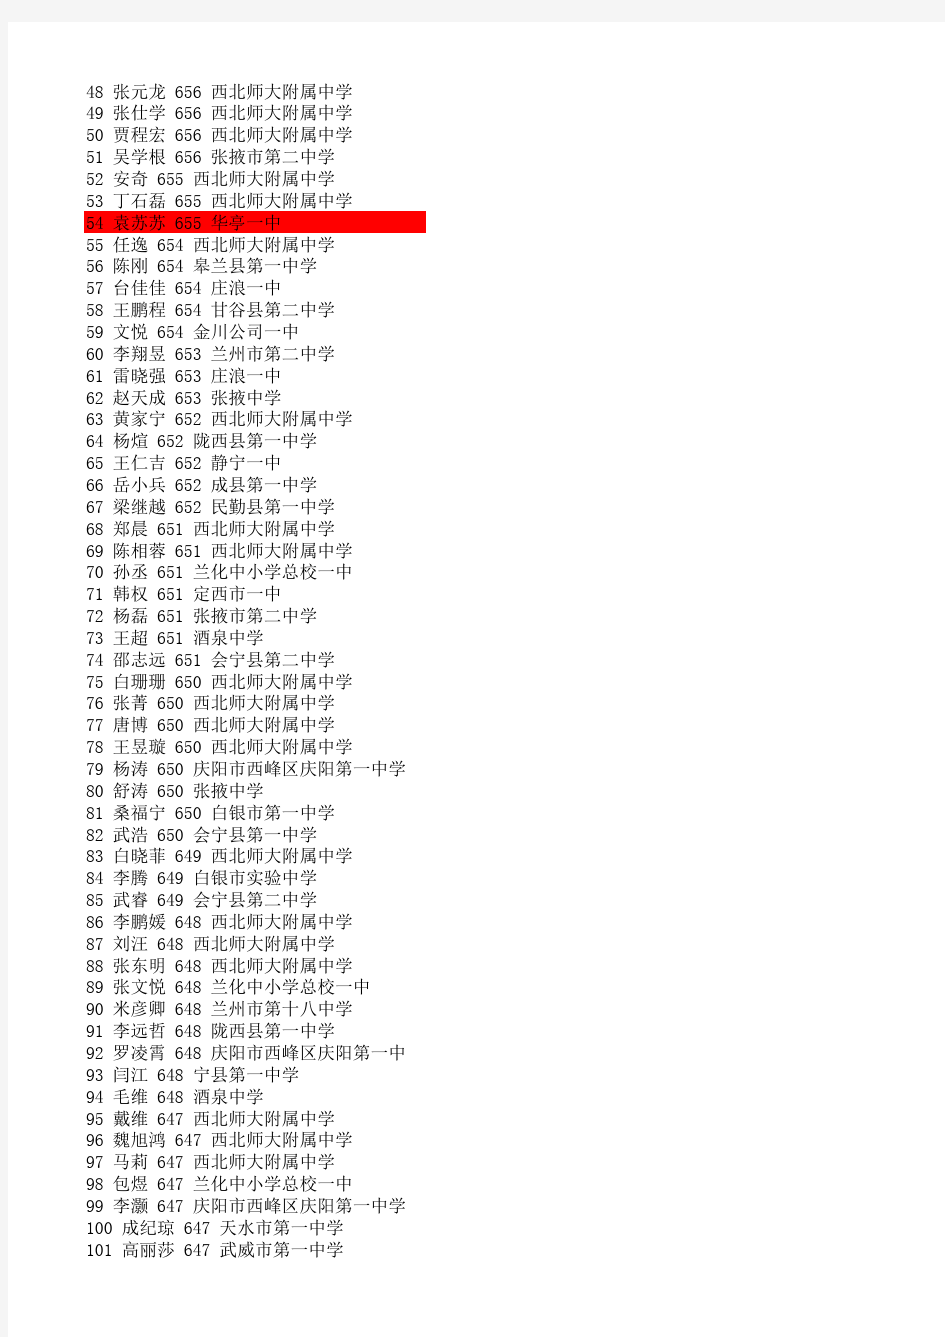 2012年甘肃省高考文理科前一百名名单及毕业学校